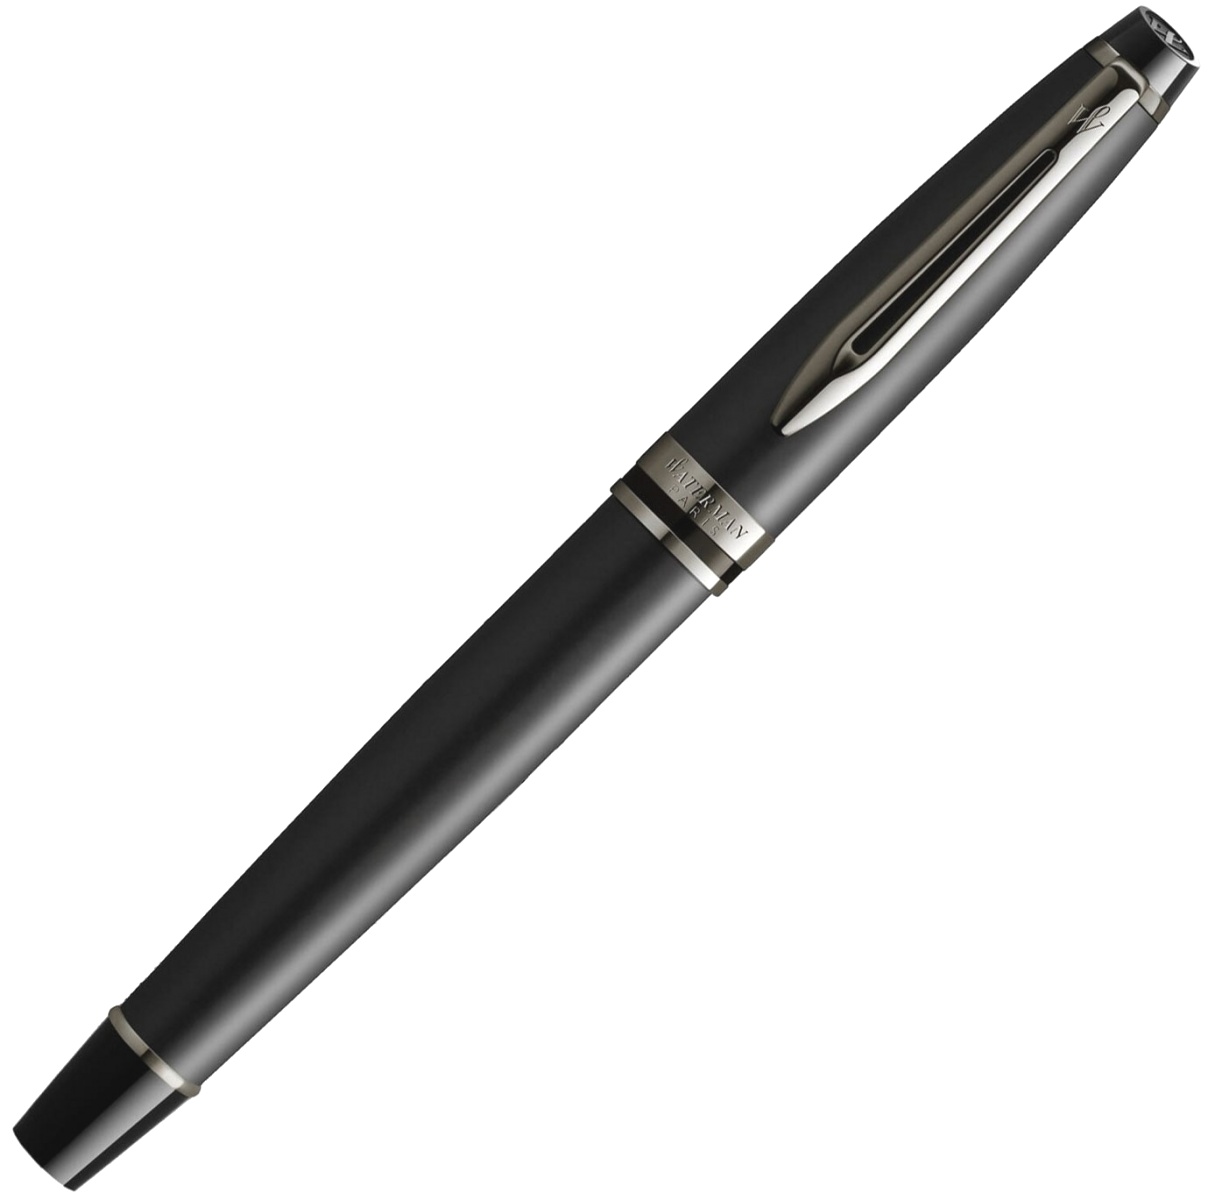  Ручка-роллер Waterman Expert DeLuxe, Metallic Black RT, фото 2